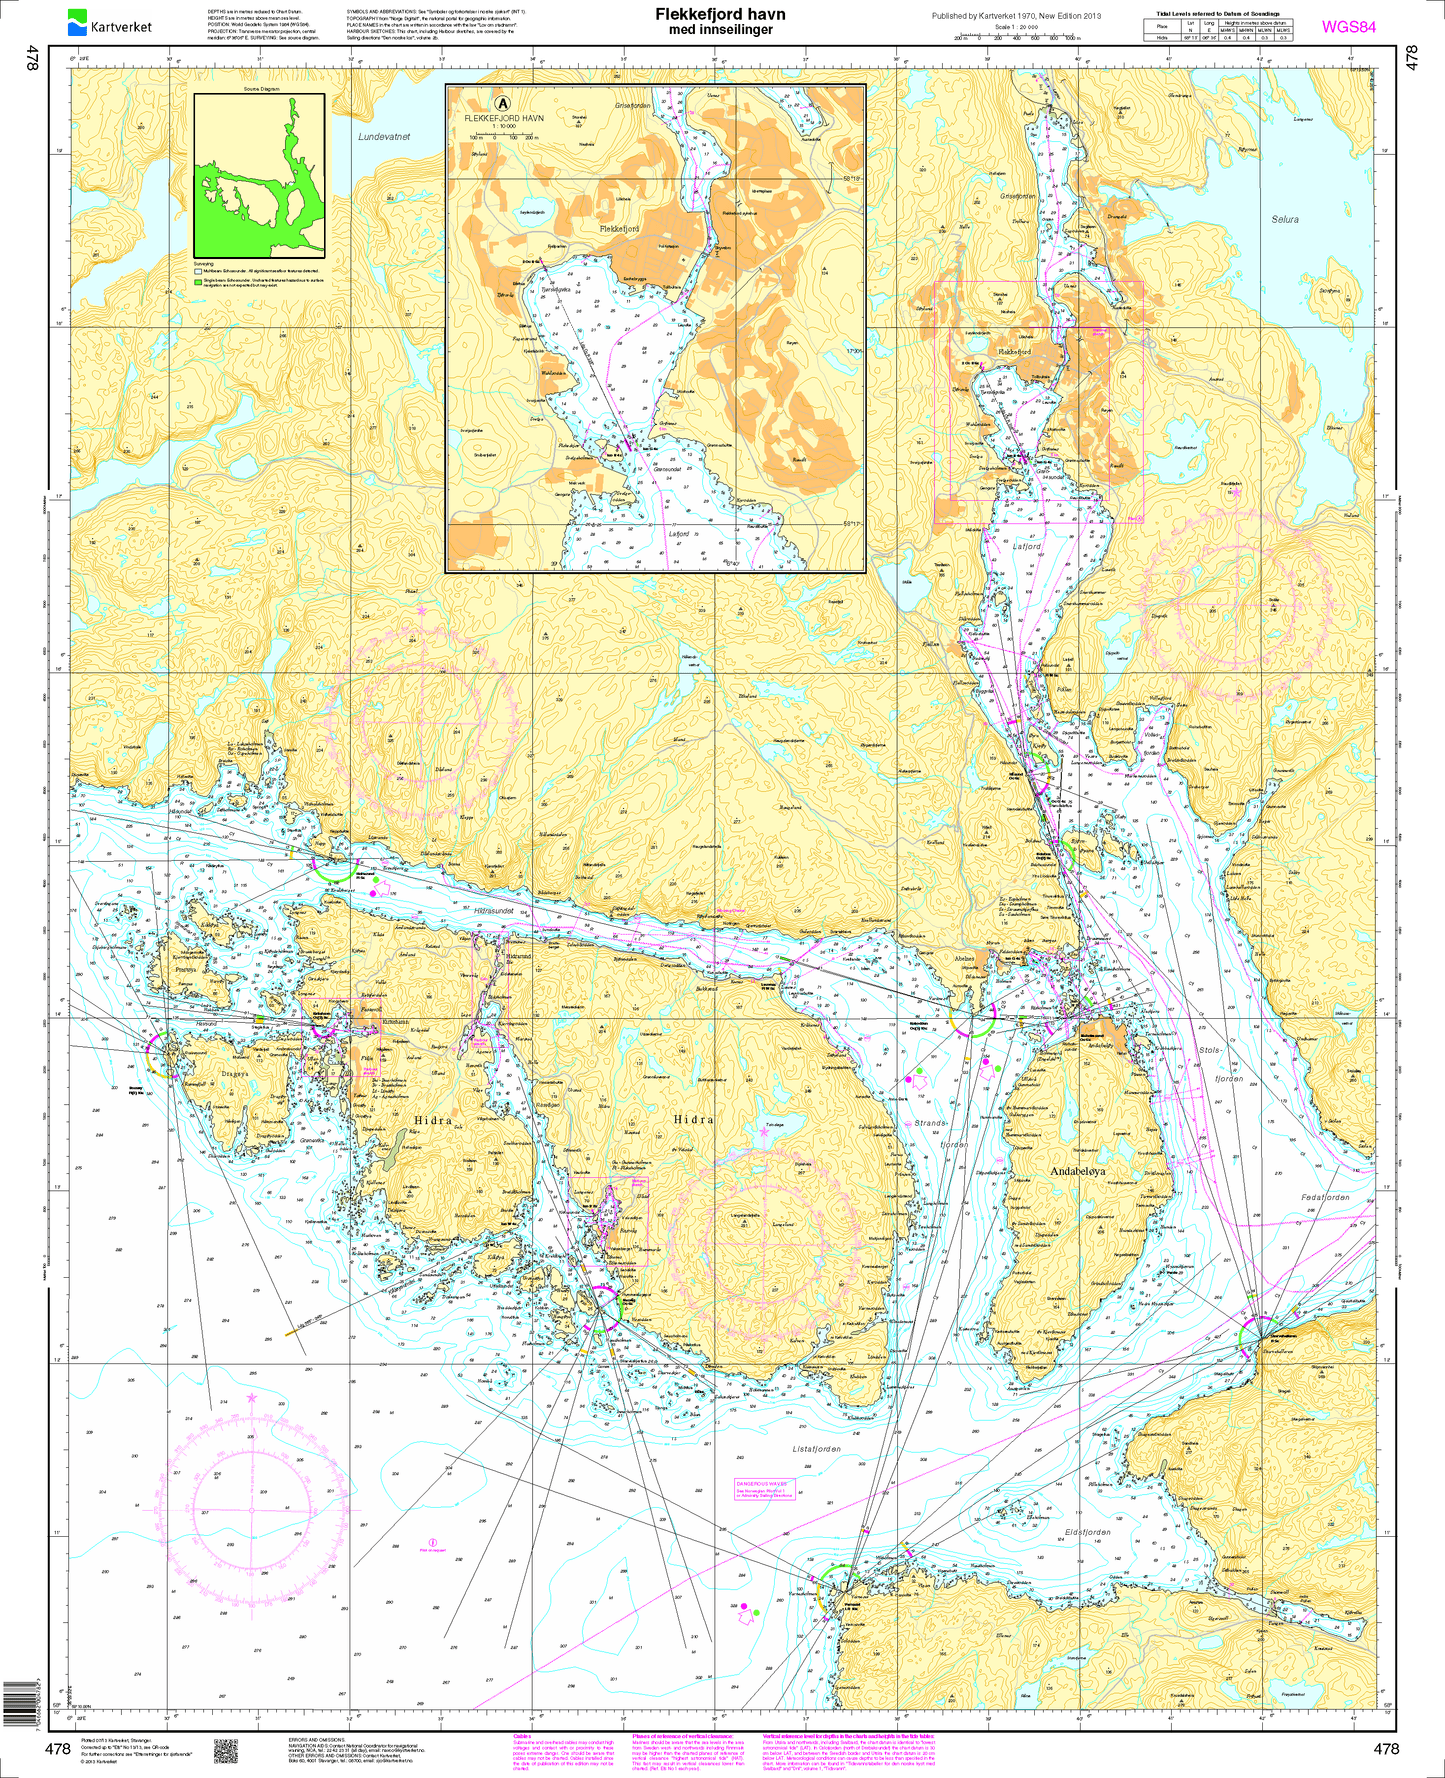 478 Flekkefjord havn med innseilinger